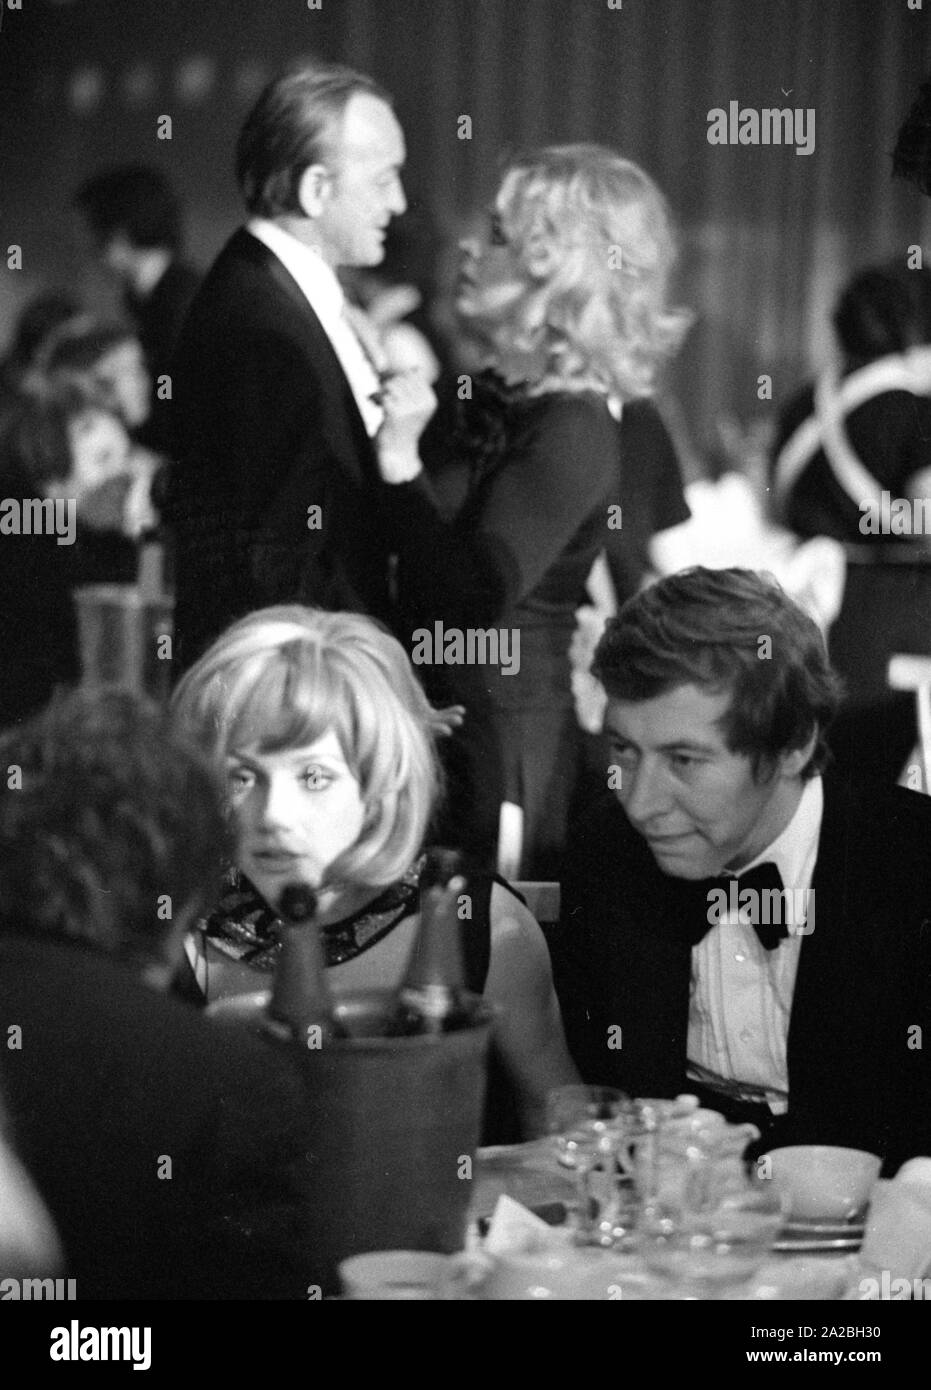 Les Français Serge Gainsbourg au cinéma allemand 1974 balle dans le Bayerischer Hof. Banque D'Images